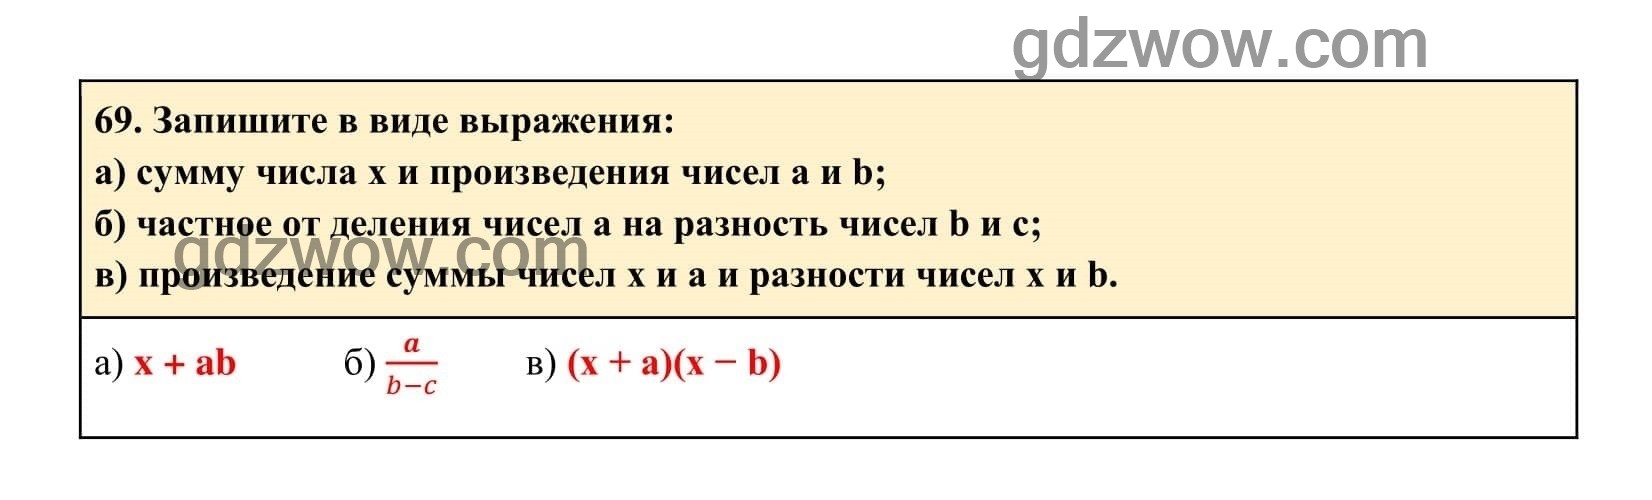 Упражнение 69 - ГДЗ по Алгебре 7 класс Учебник Макарычев (решебник) - GDZwow